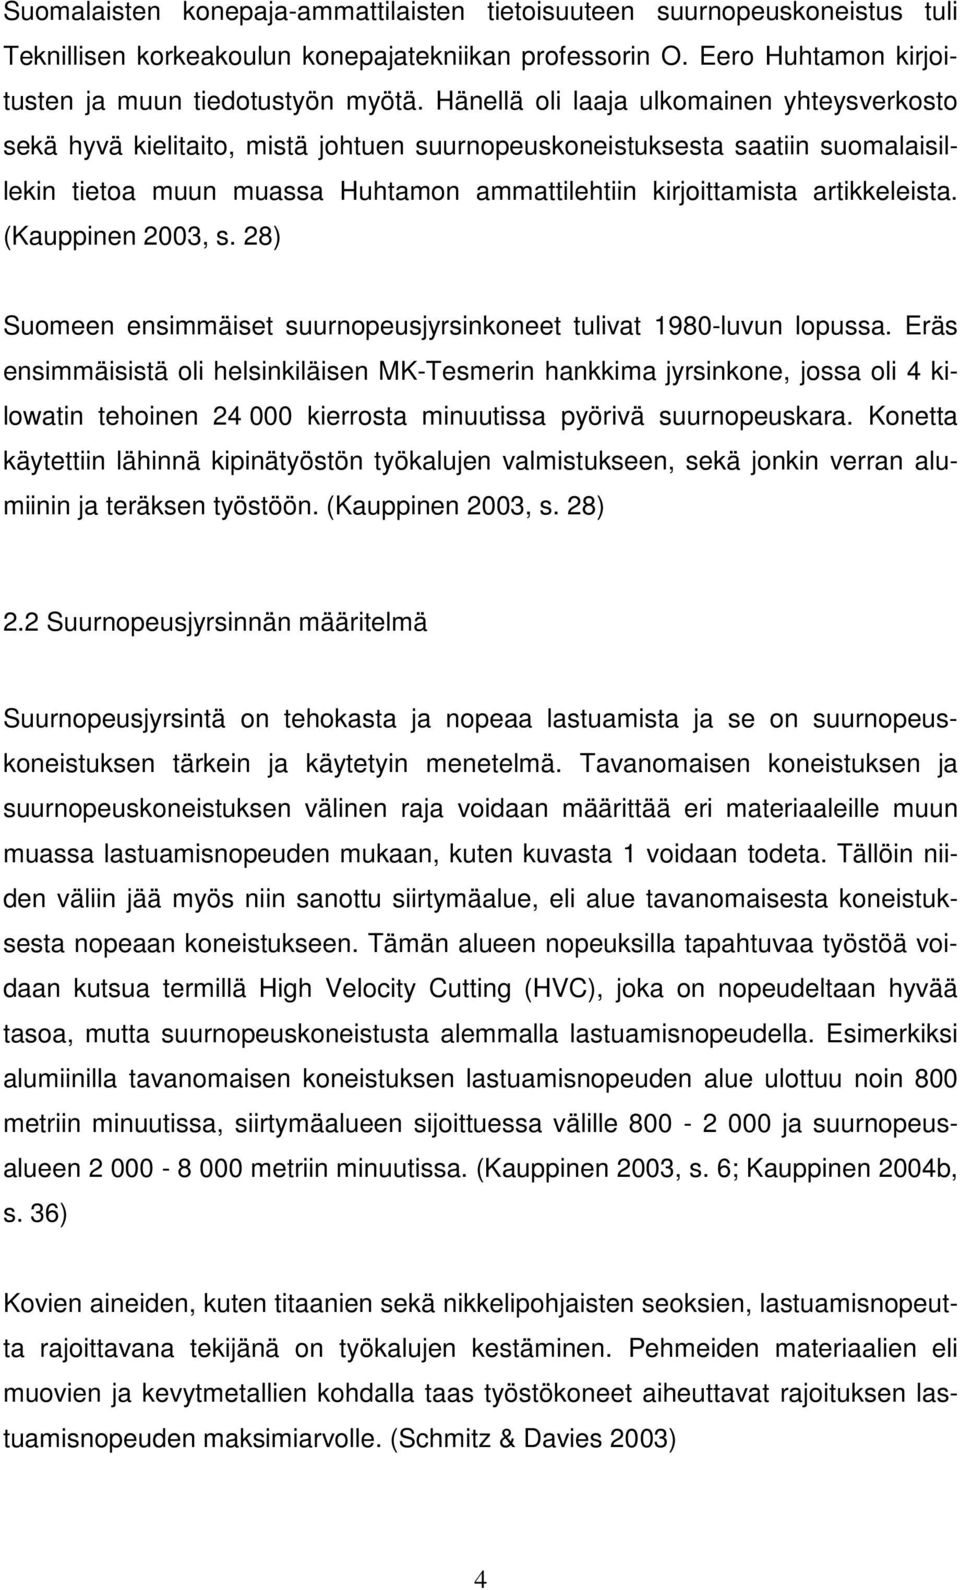 artikkeleista. (Kauppinen 2003, s. 28) Suomeen ensimmäiset suurnopeusjyrsinkoneet tulivat 1980-luvun lopussa.